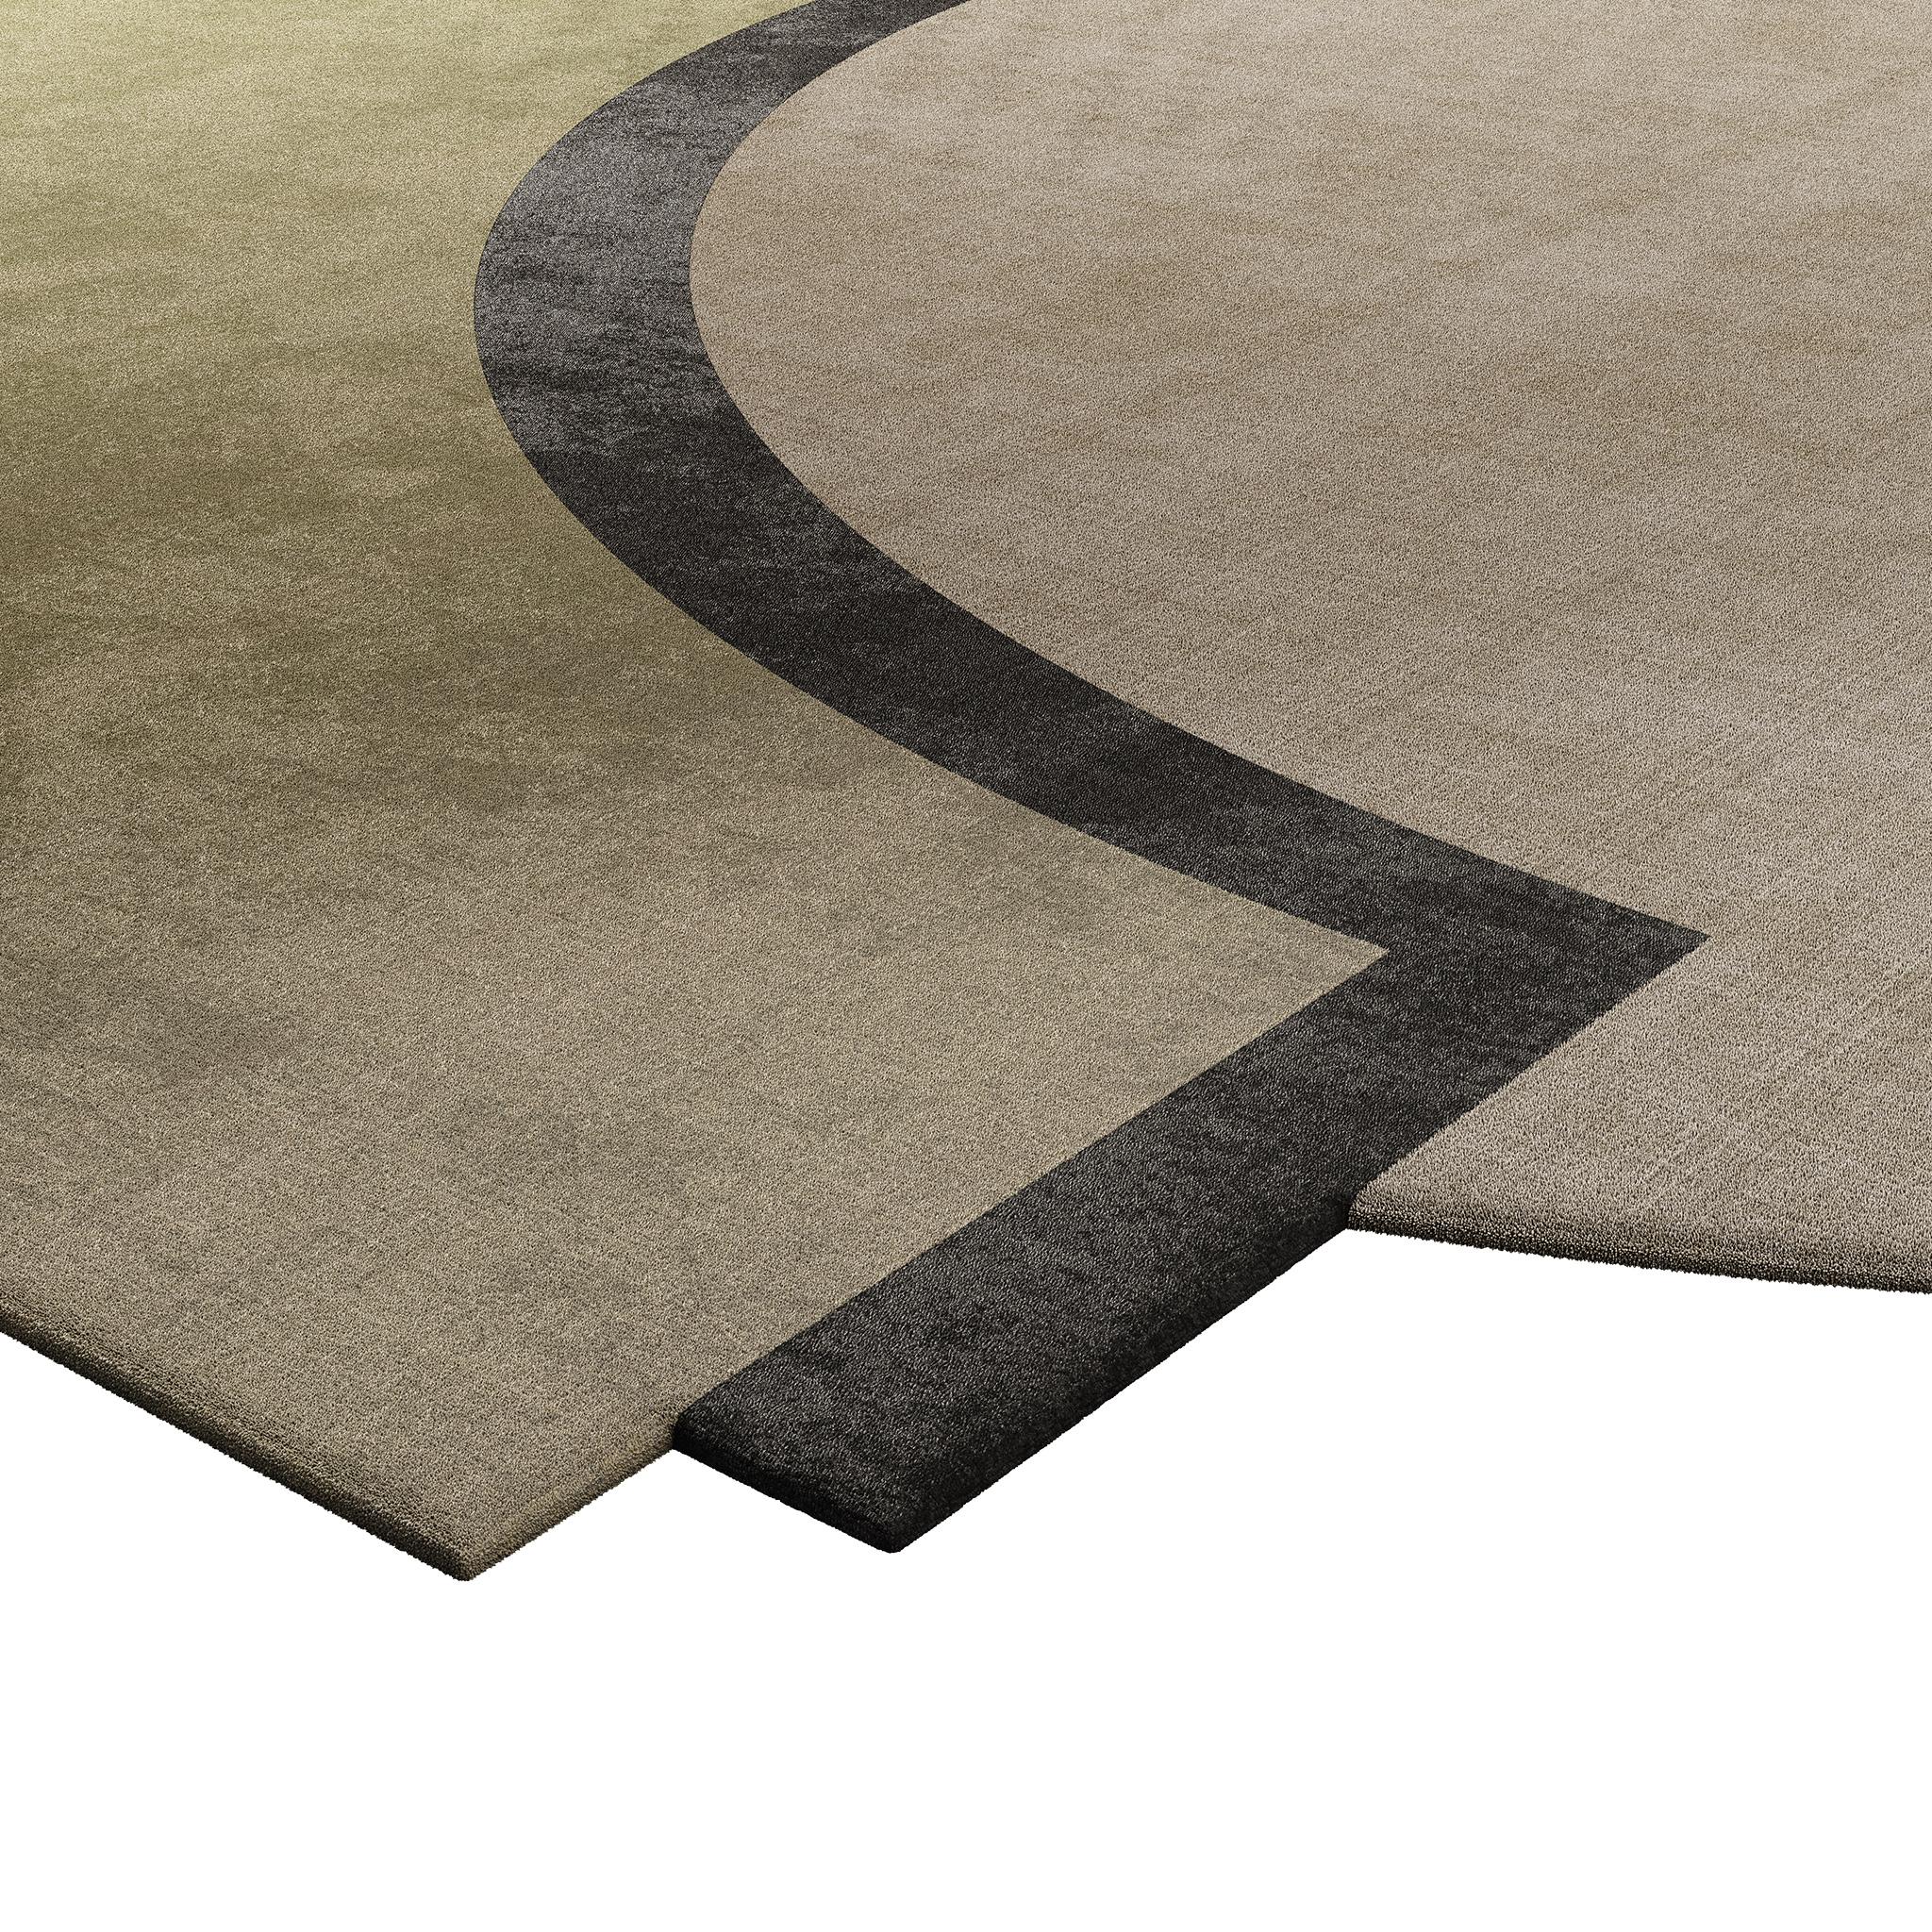 Ein minimalistischer Teppich aus Lyocell. Dieser moderne Teppich in neutralen Farben passt in jedes moderne Interieur, unabhängig von seiner Zusammensetzung.

Die neutrale Farbe macht diesen Teppich zu einer zeitlosen Wahl, die sich leicht in eine